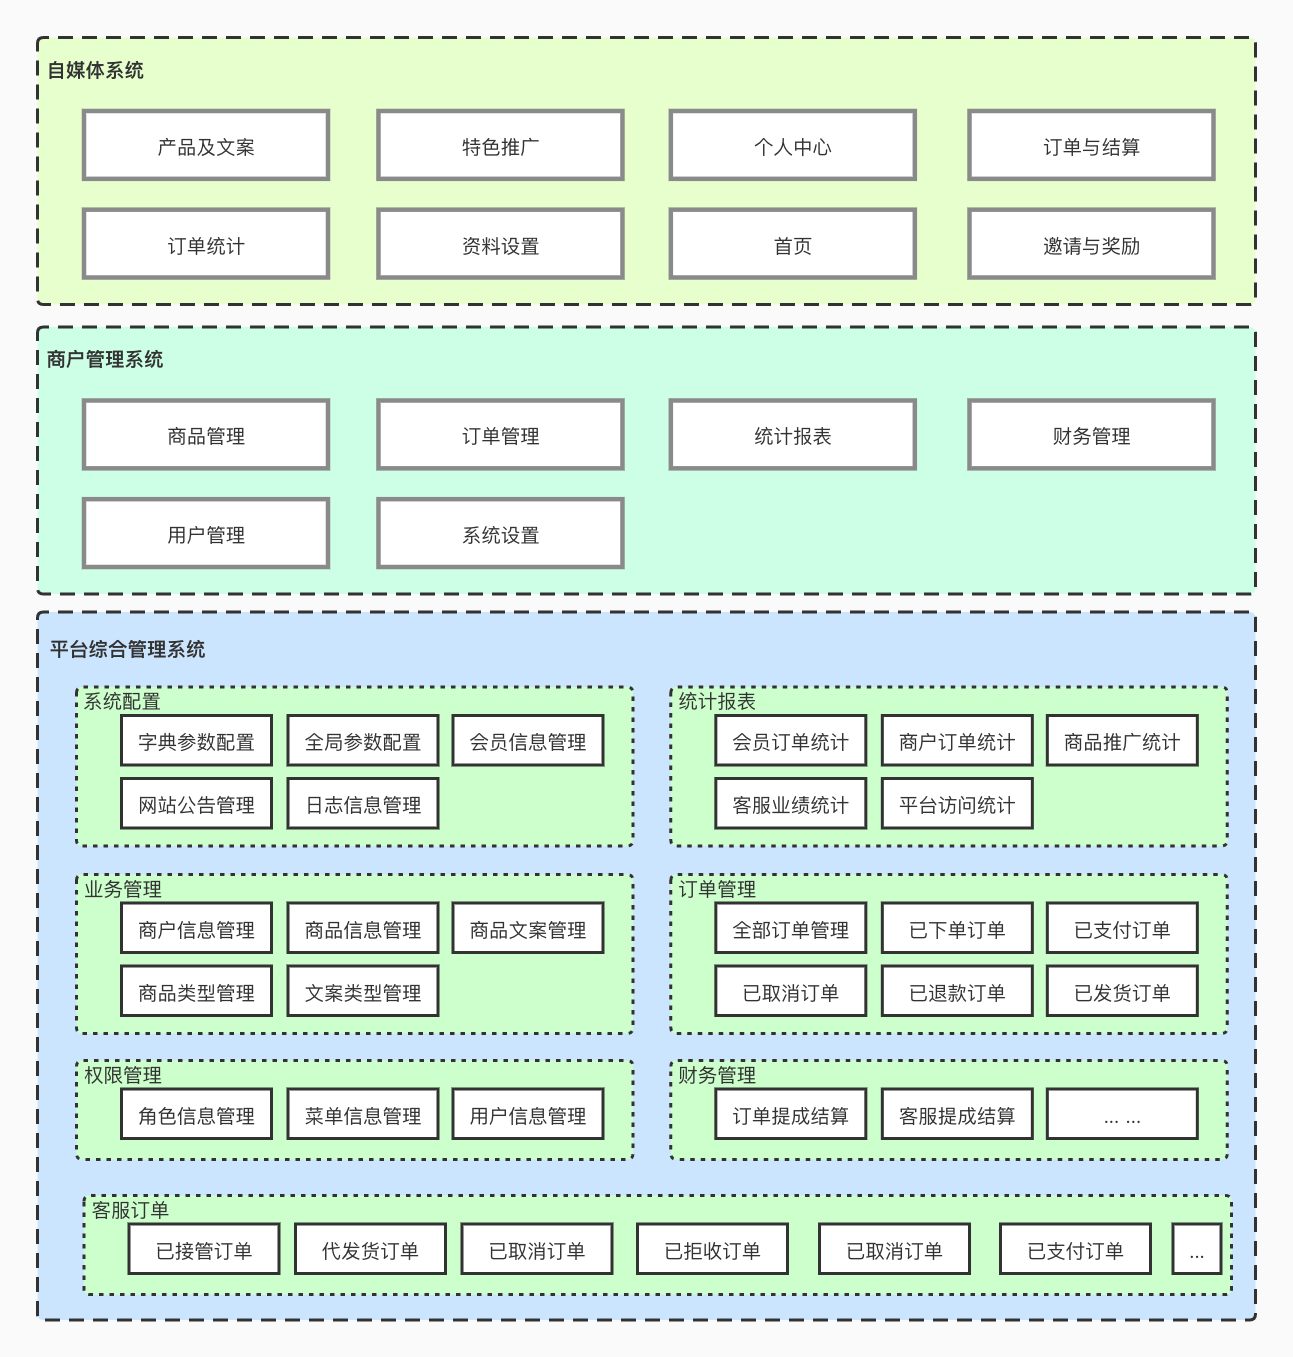 微分销功能架构图.jpg